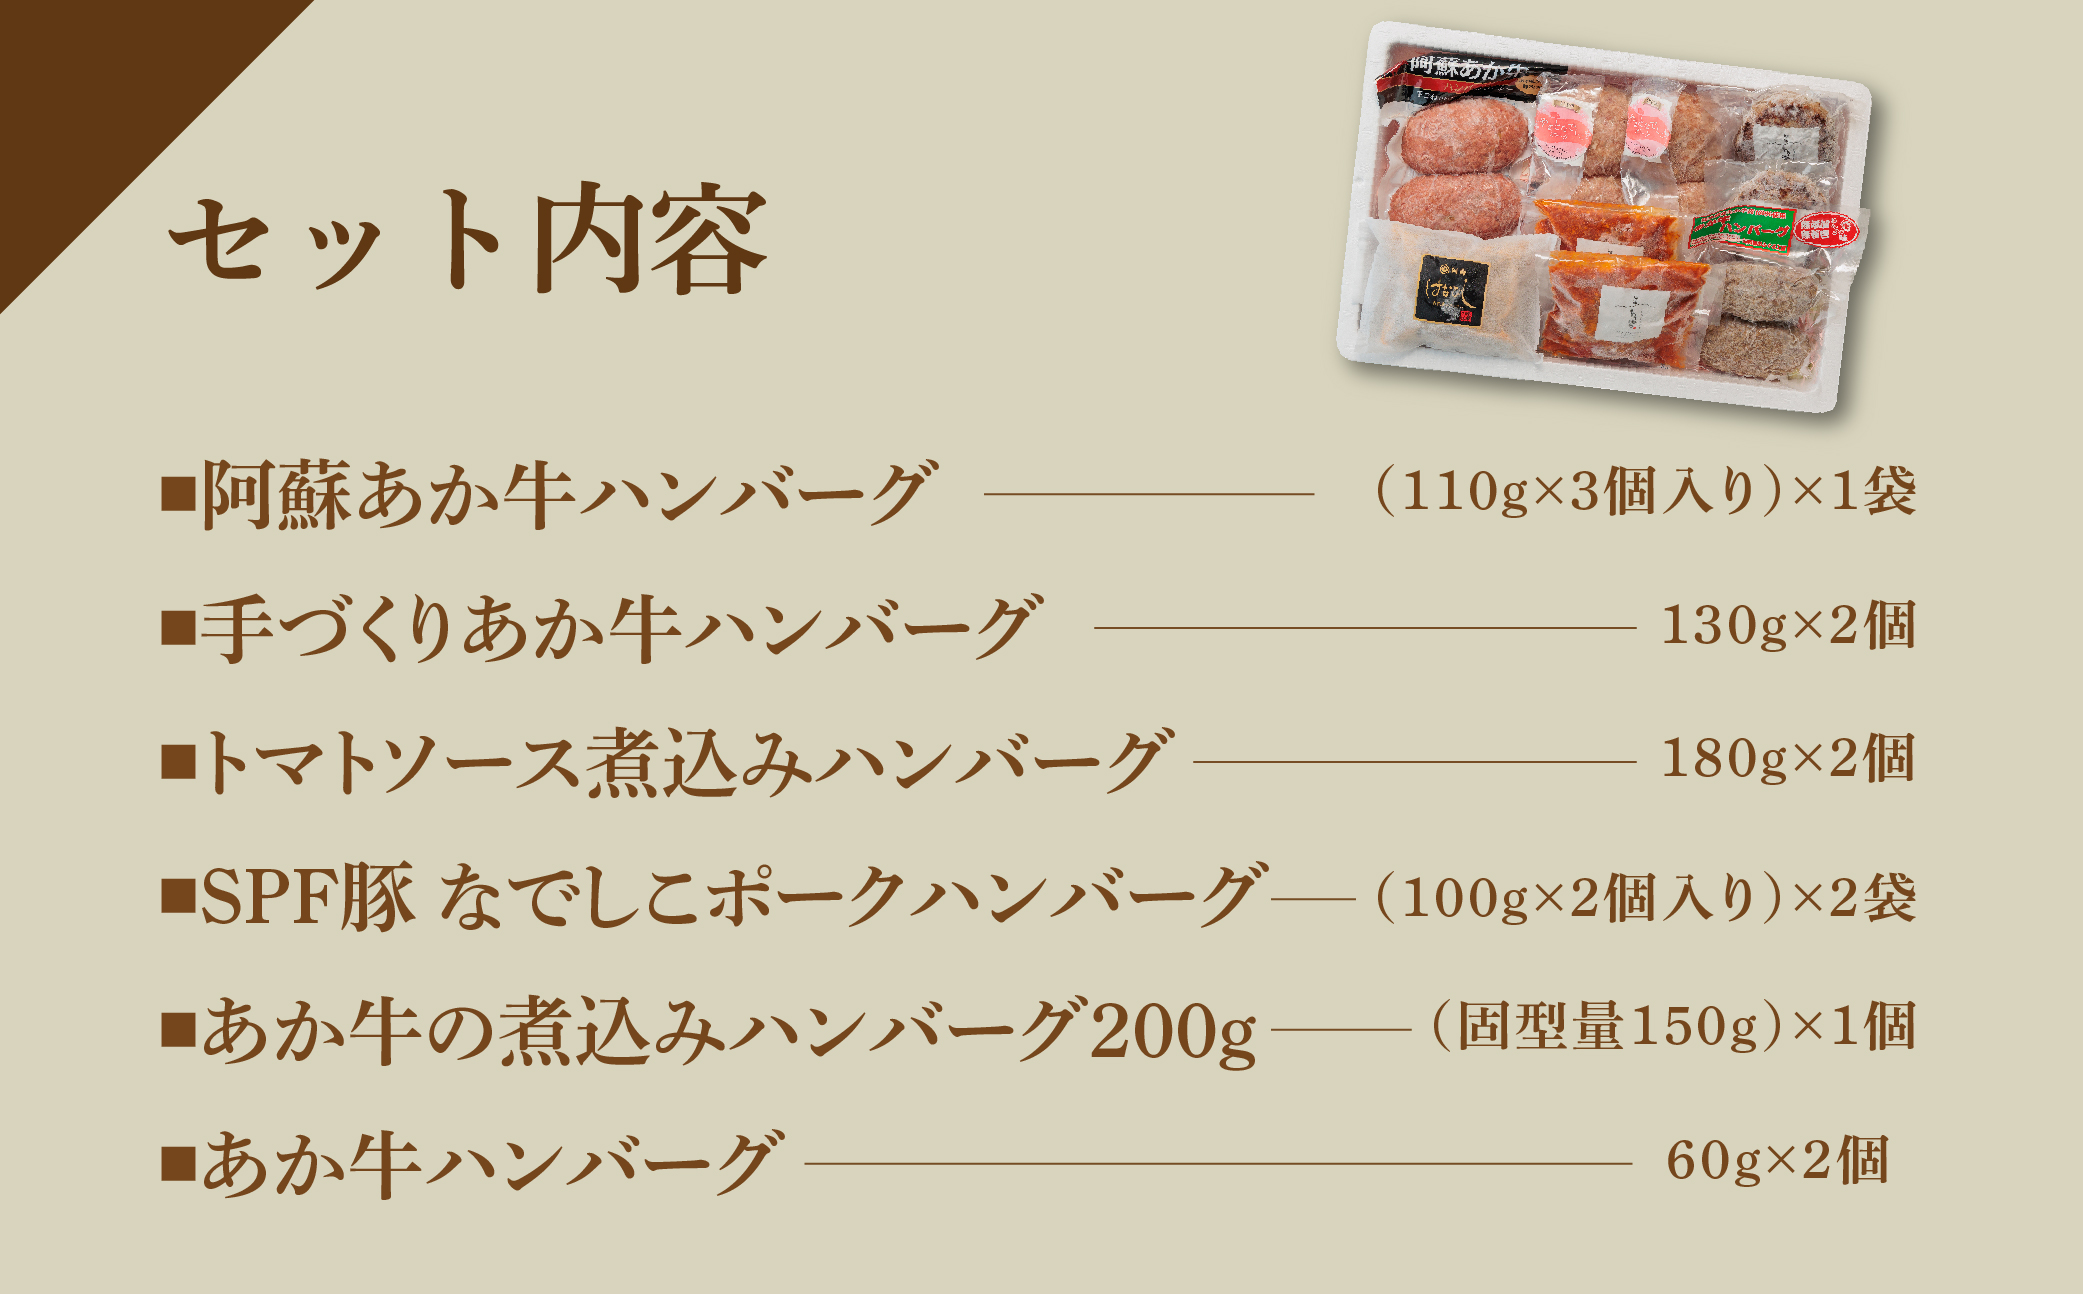 ハンバーグ バラエティーセット 6種類 約1.7kg あか牛 ポーク トマト 煮込み セット 詰め合わせ 食べ比べ 人気 美味しい 熊本 阿蘇